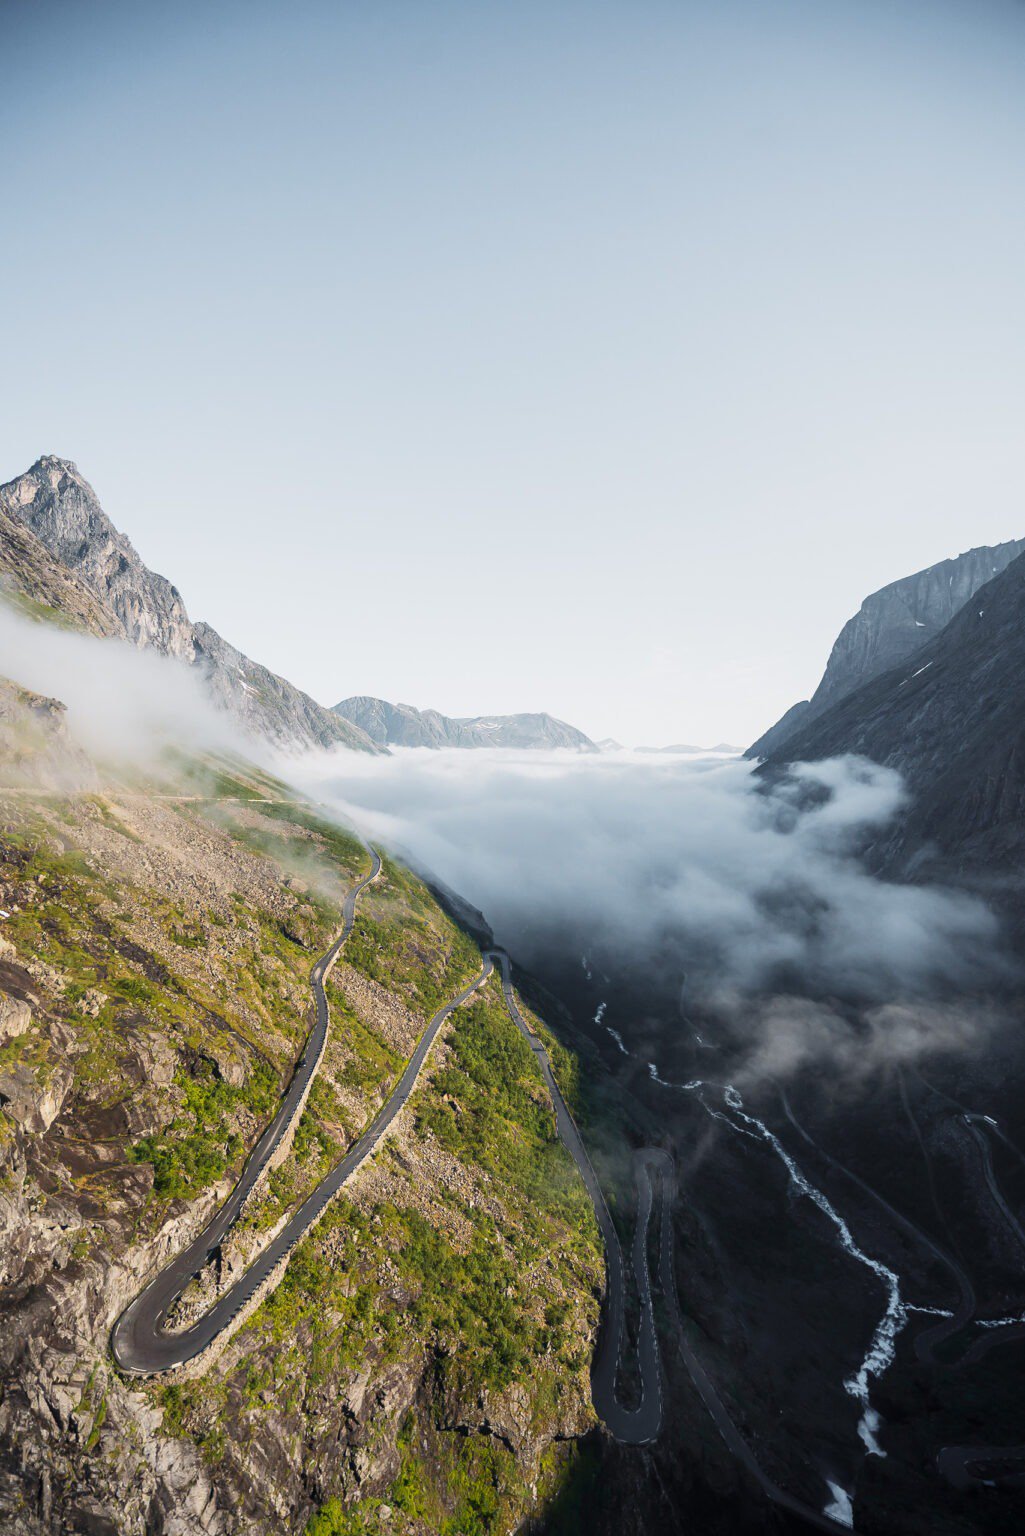 The famous hairpin road: Trollstigen in Norway